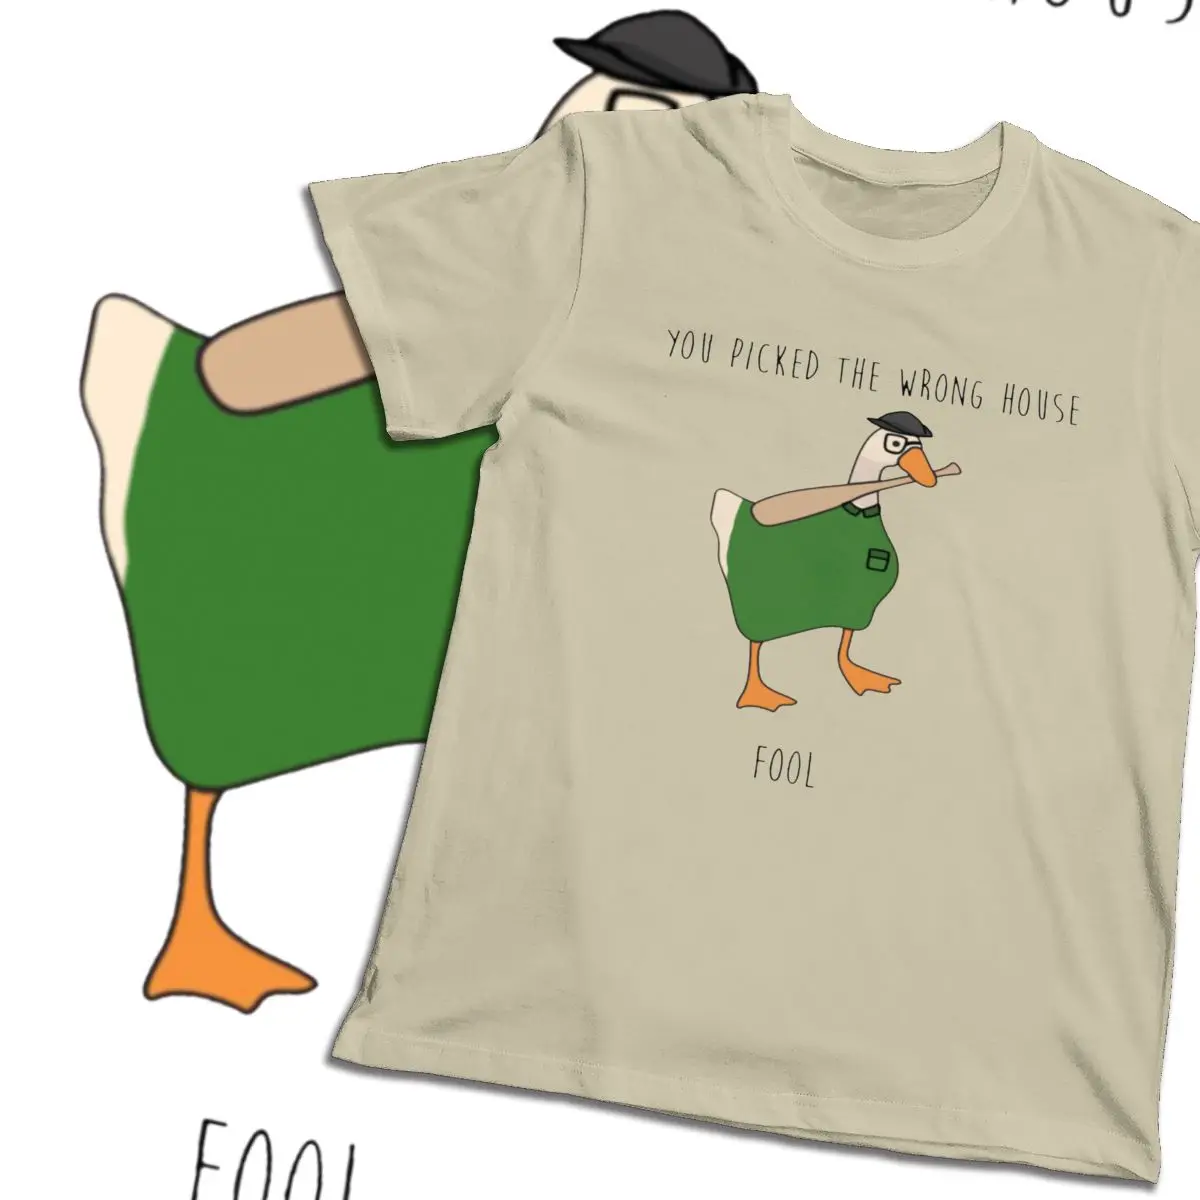 Man-O-neck Du valgte Det Forkerte Hus Untitled Goose Spil T-shirt til Sommeren Mænd Behagelig Top Tee Stor Størrelse